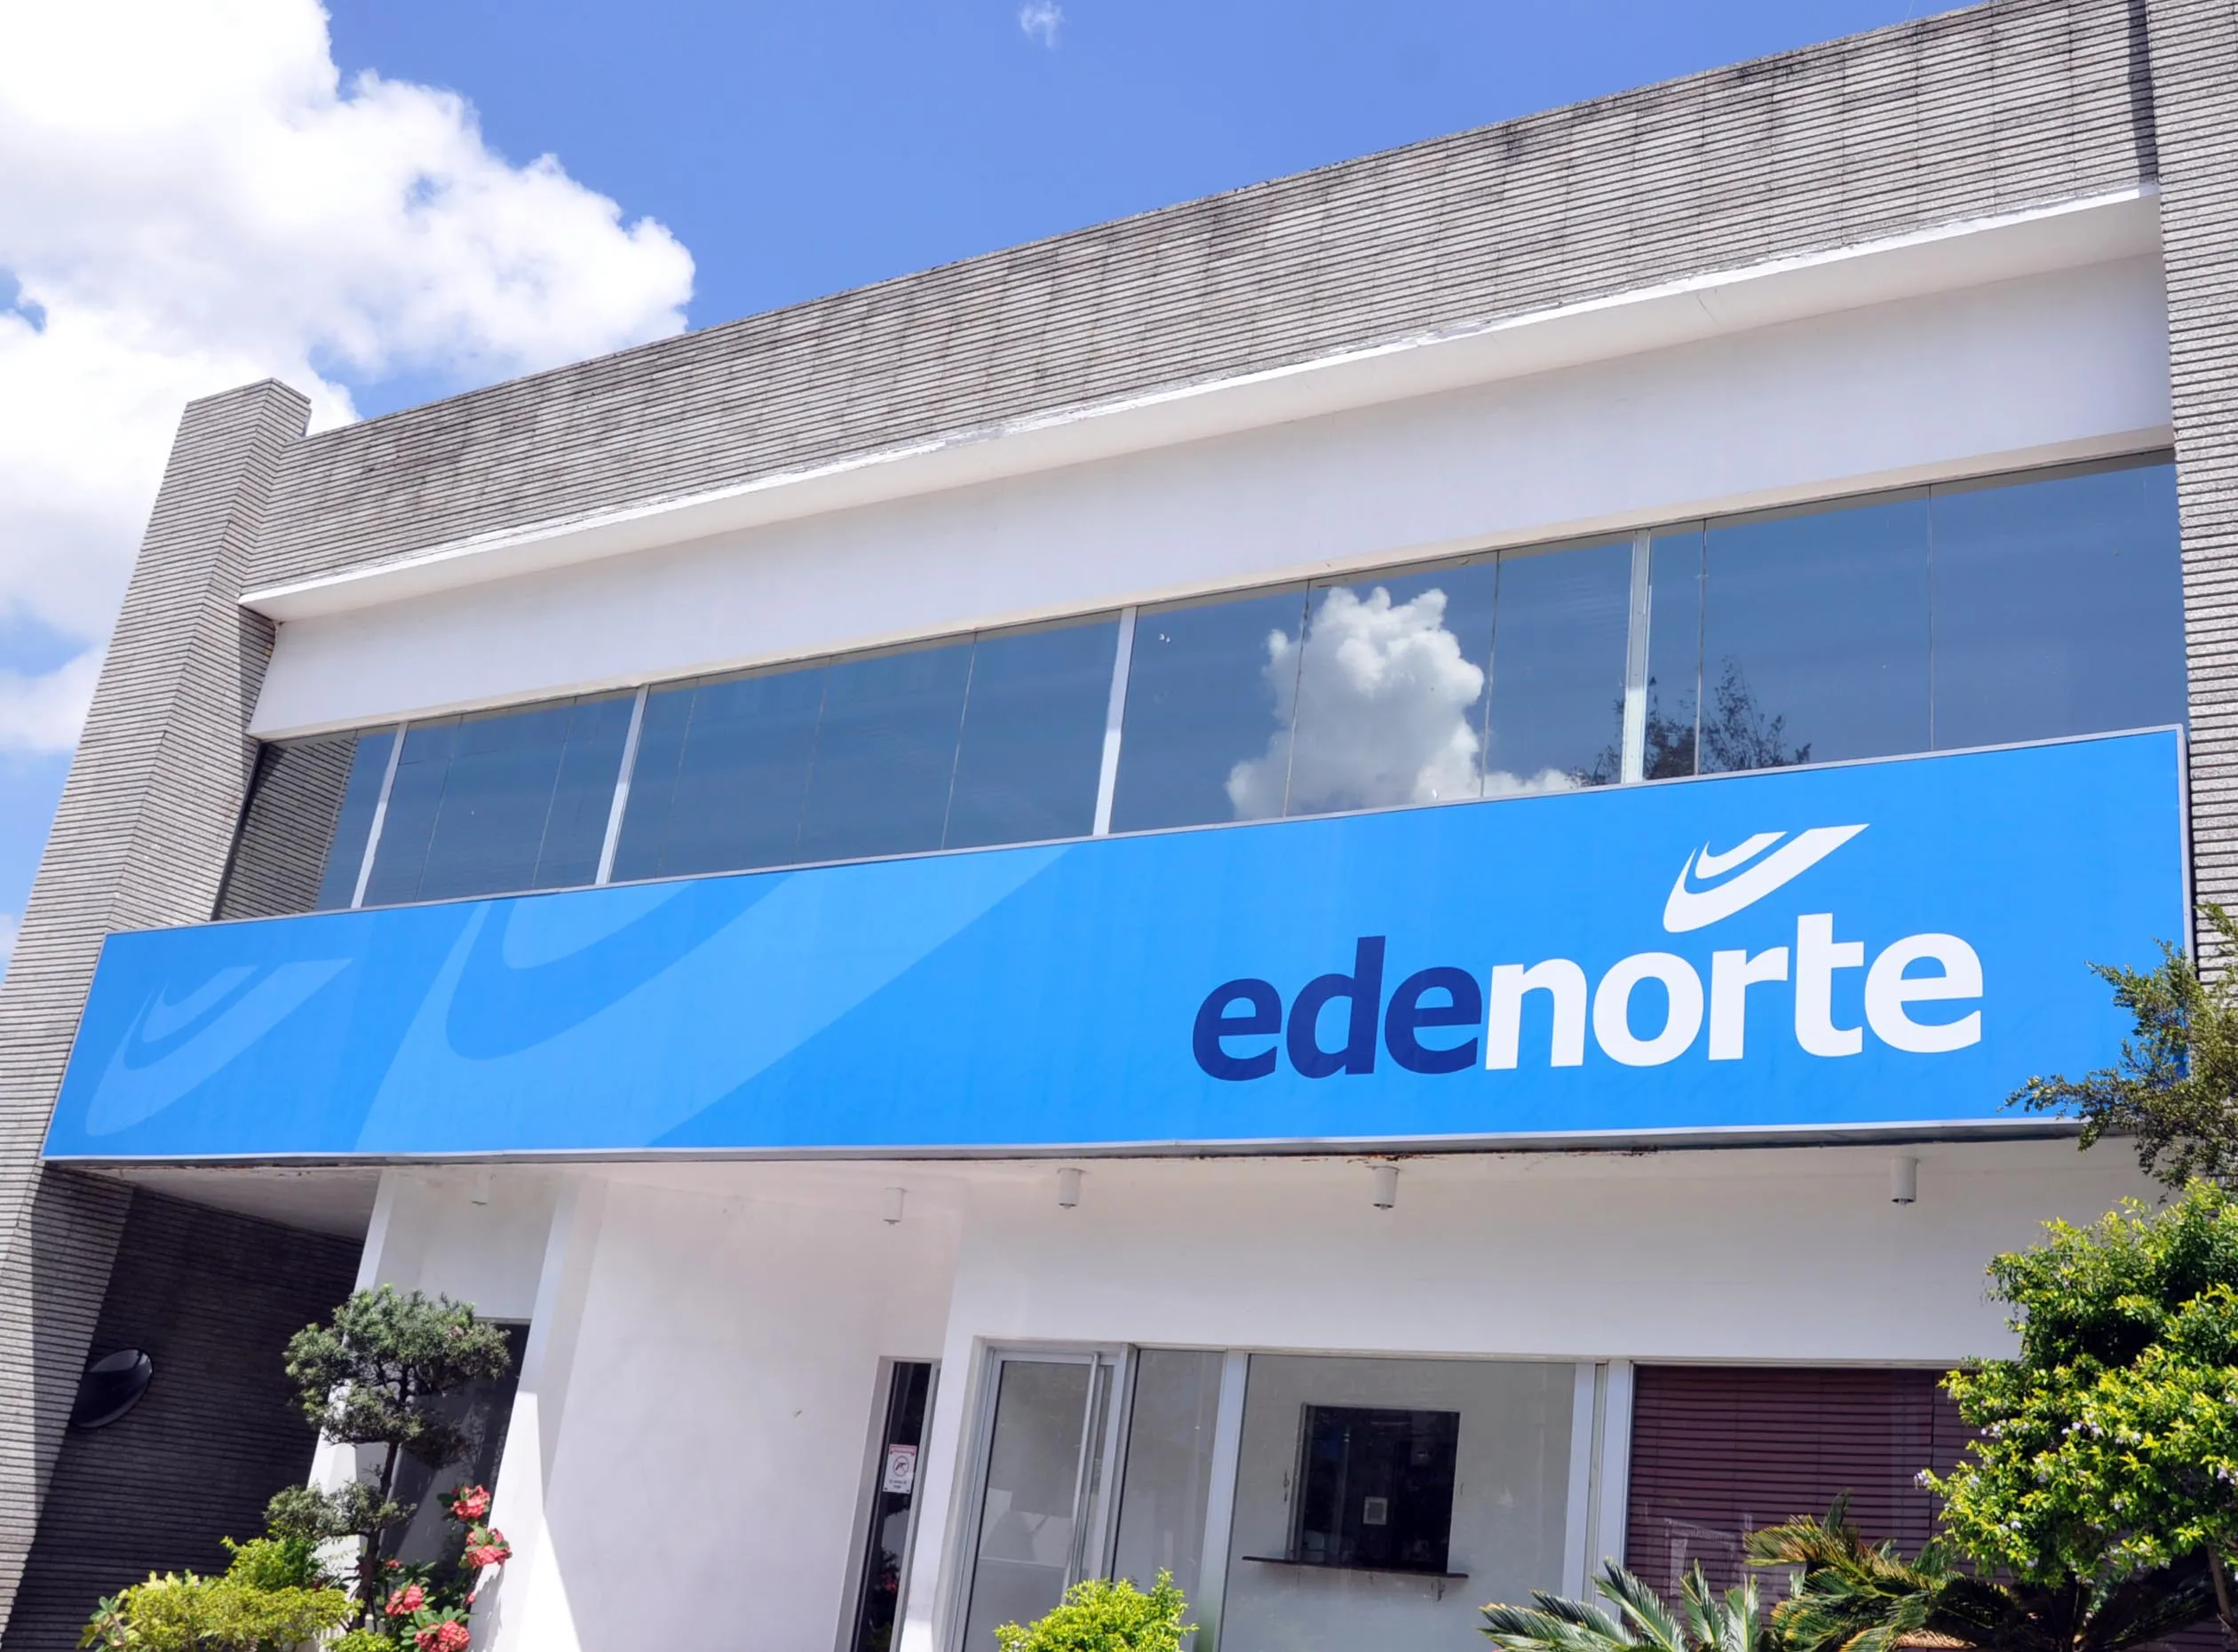 Trabajos de mantenimiento de Edenorte afectarán al suministro en Puerto Plata